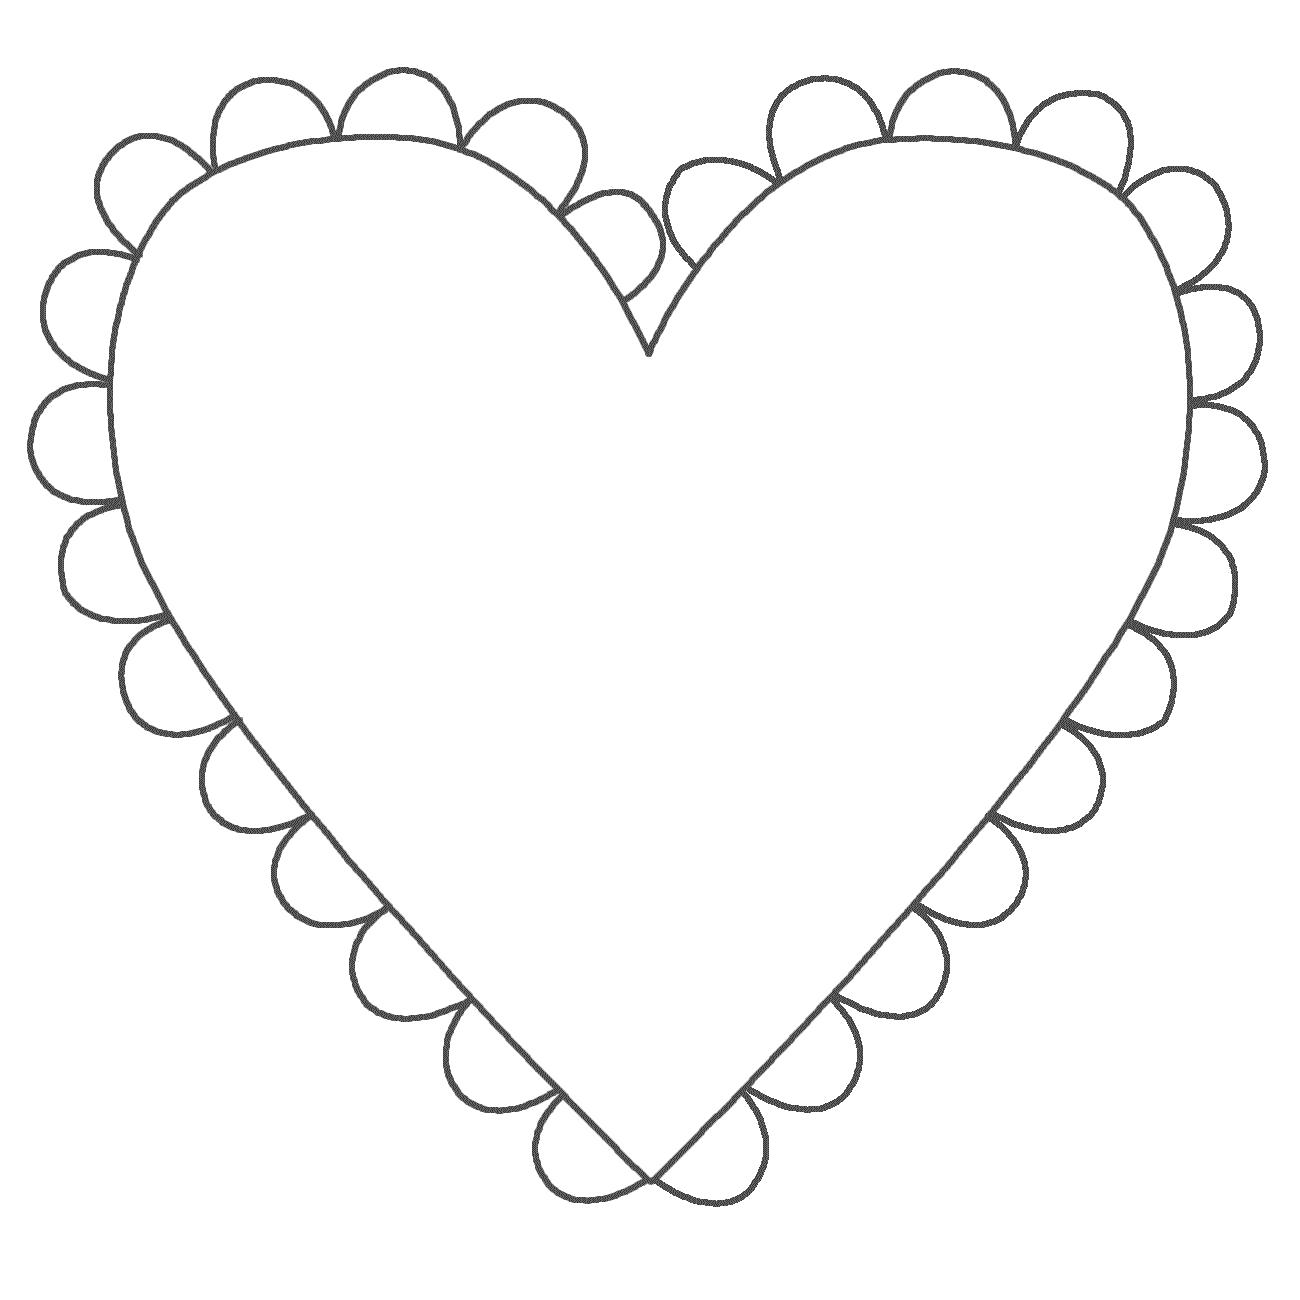 Раскраска  шаблоны сердечек для вырезания  сердечко с кружевом для вырезки из бумаги, для творчества детей. Скачать сердечко.  Распечатать сердечко